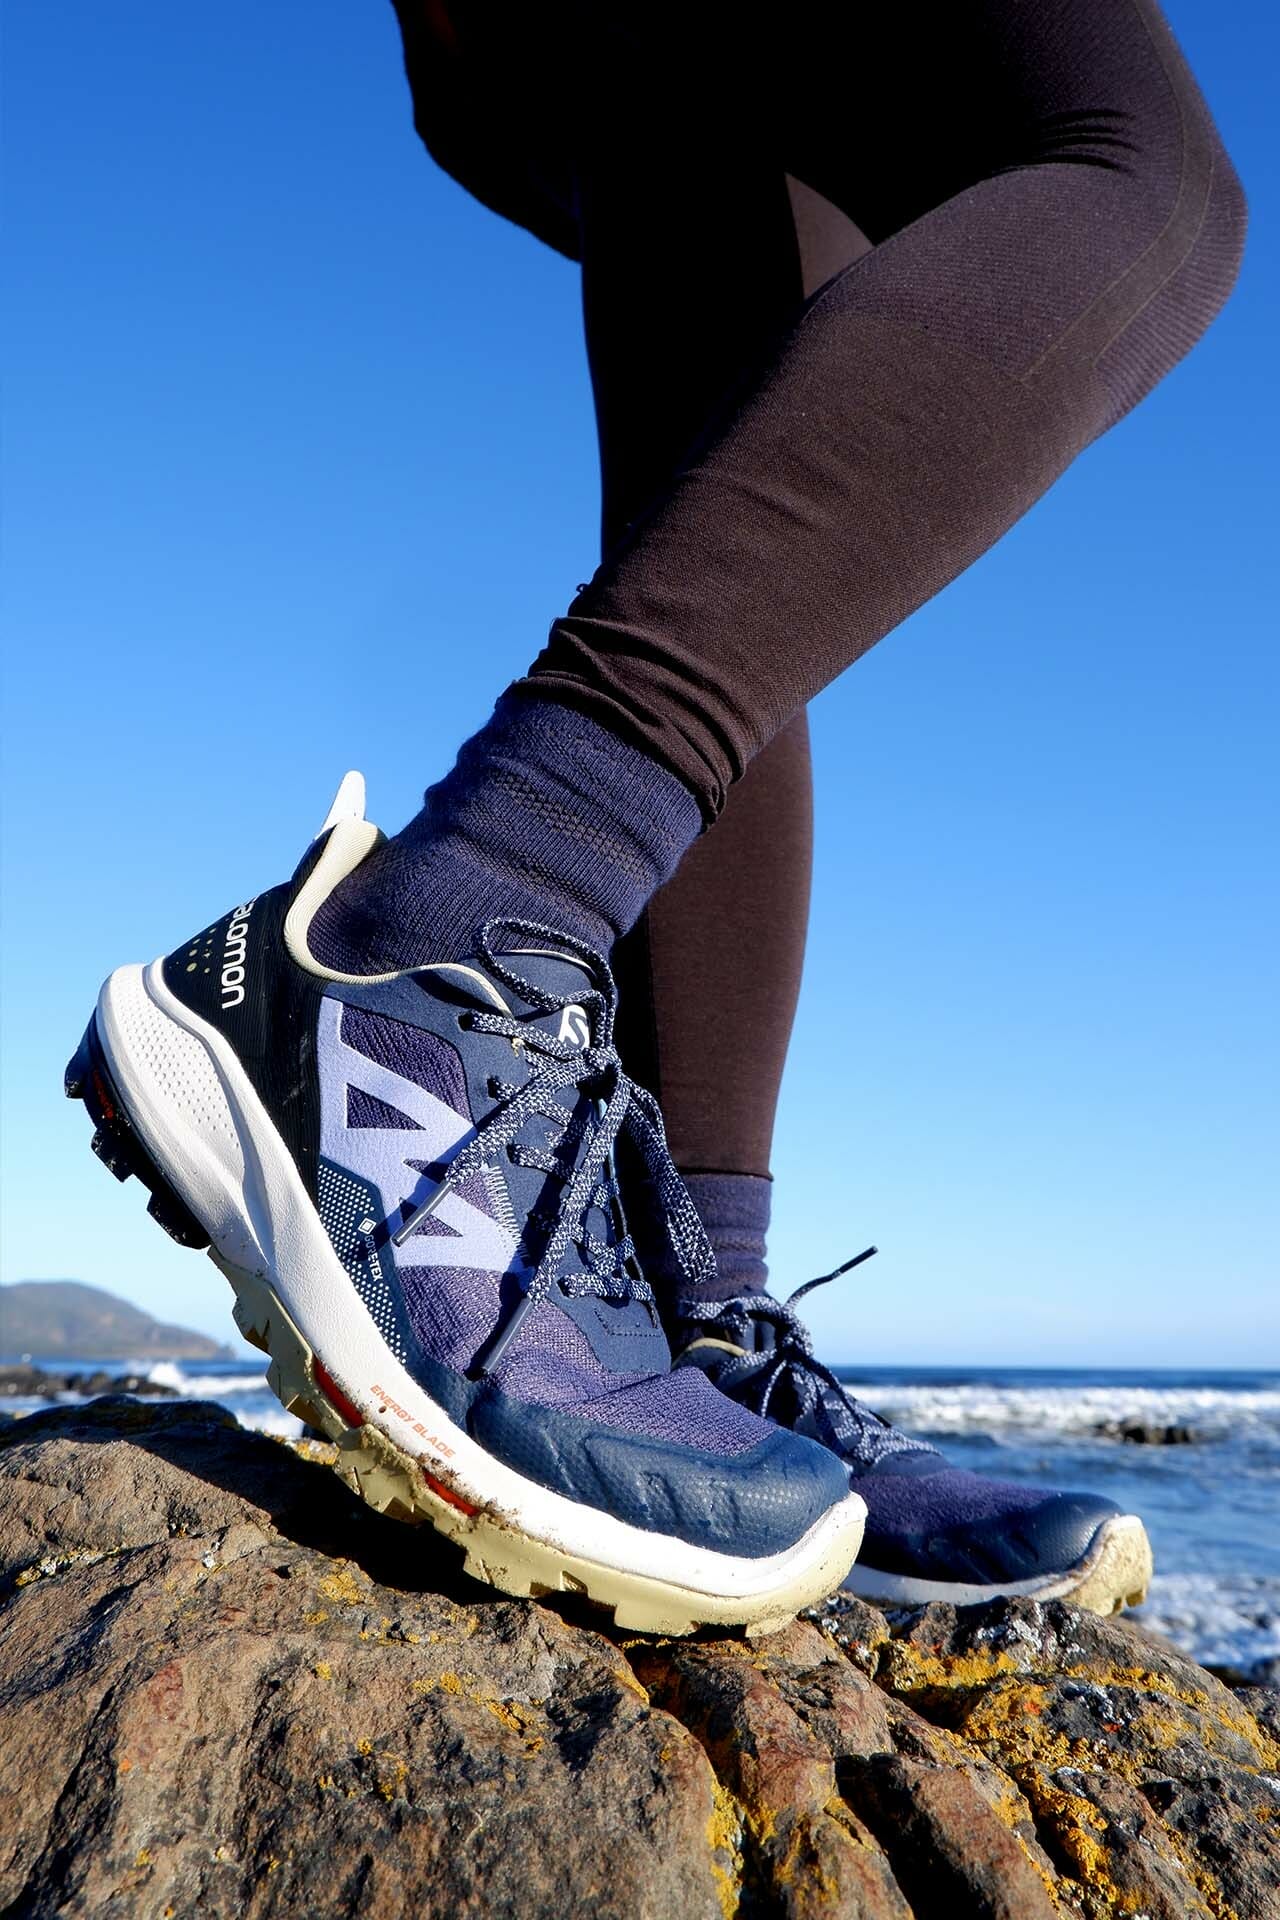 Salomon OUTpulse GORE-TEX Low Hiking Shoes - Women's